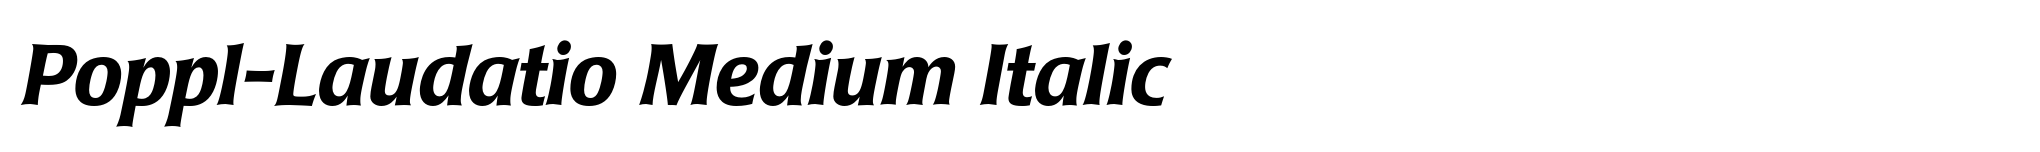 Poppl-Laudatio Medium Italic image